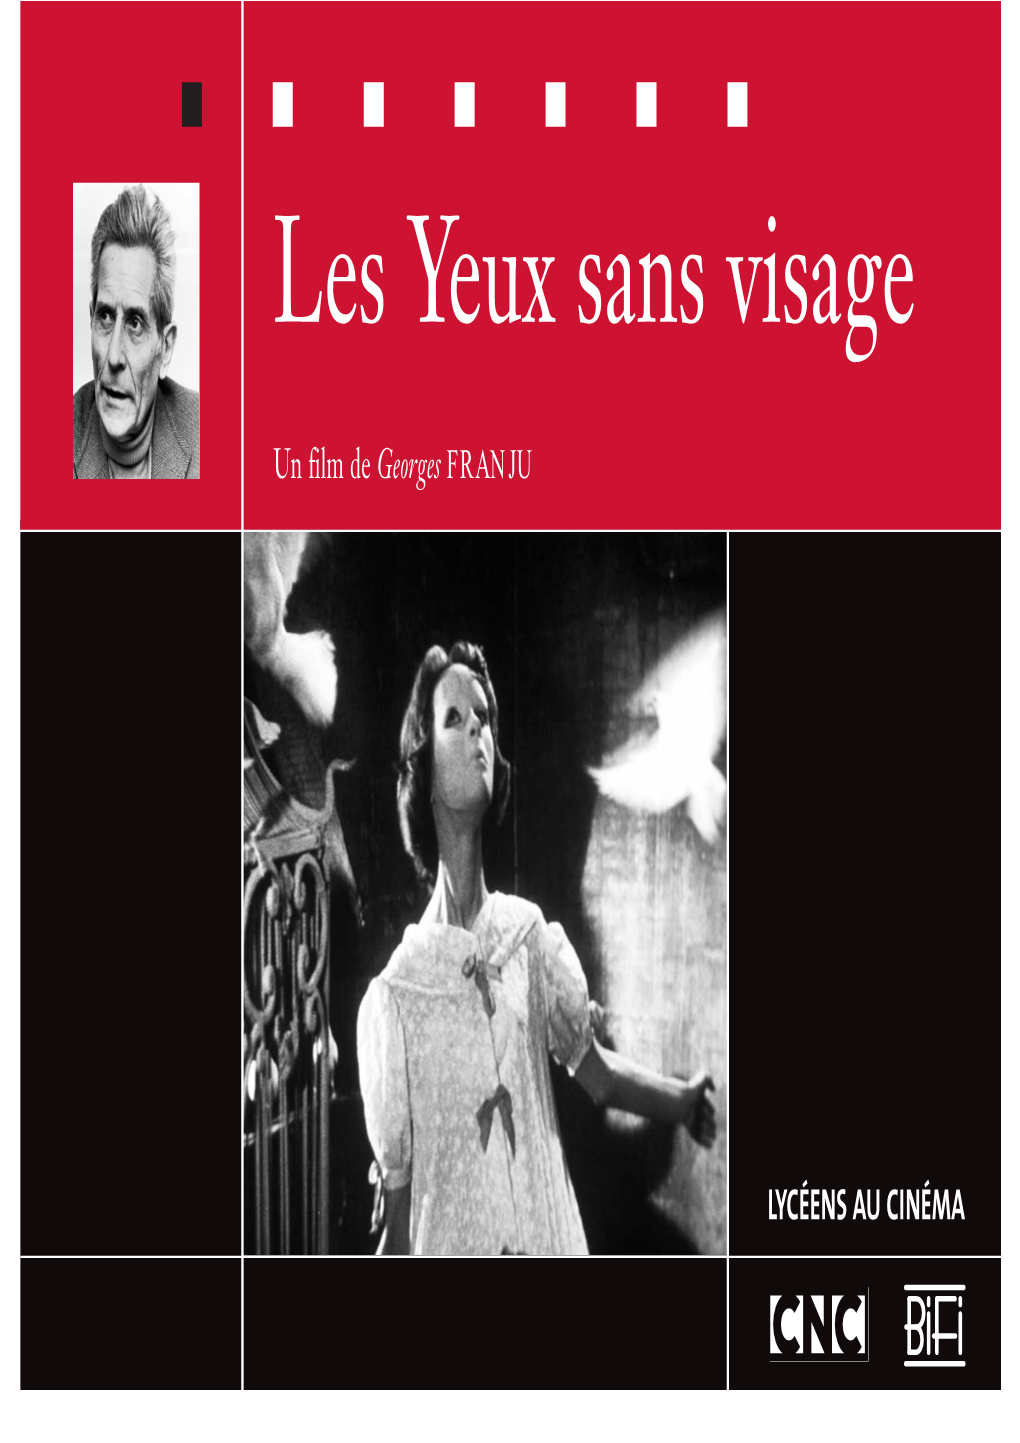 New "Les Yeux Sans Visage"